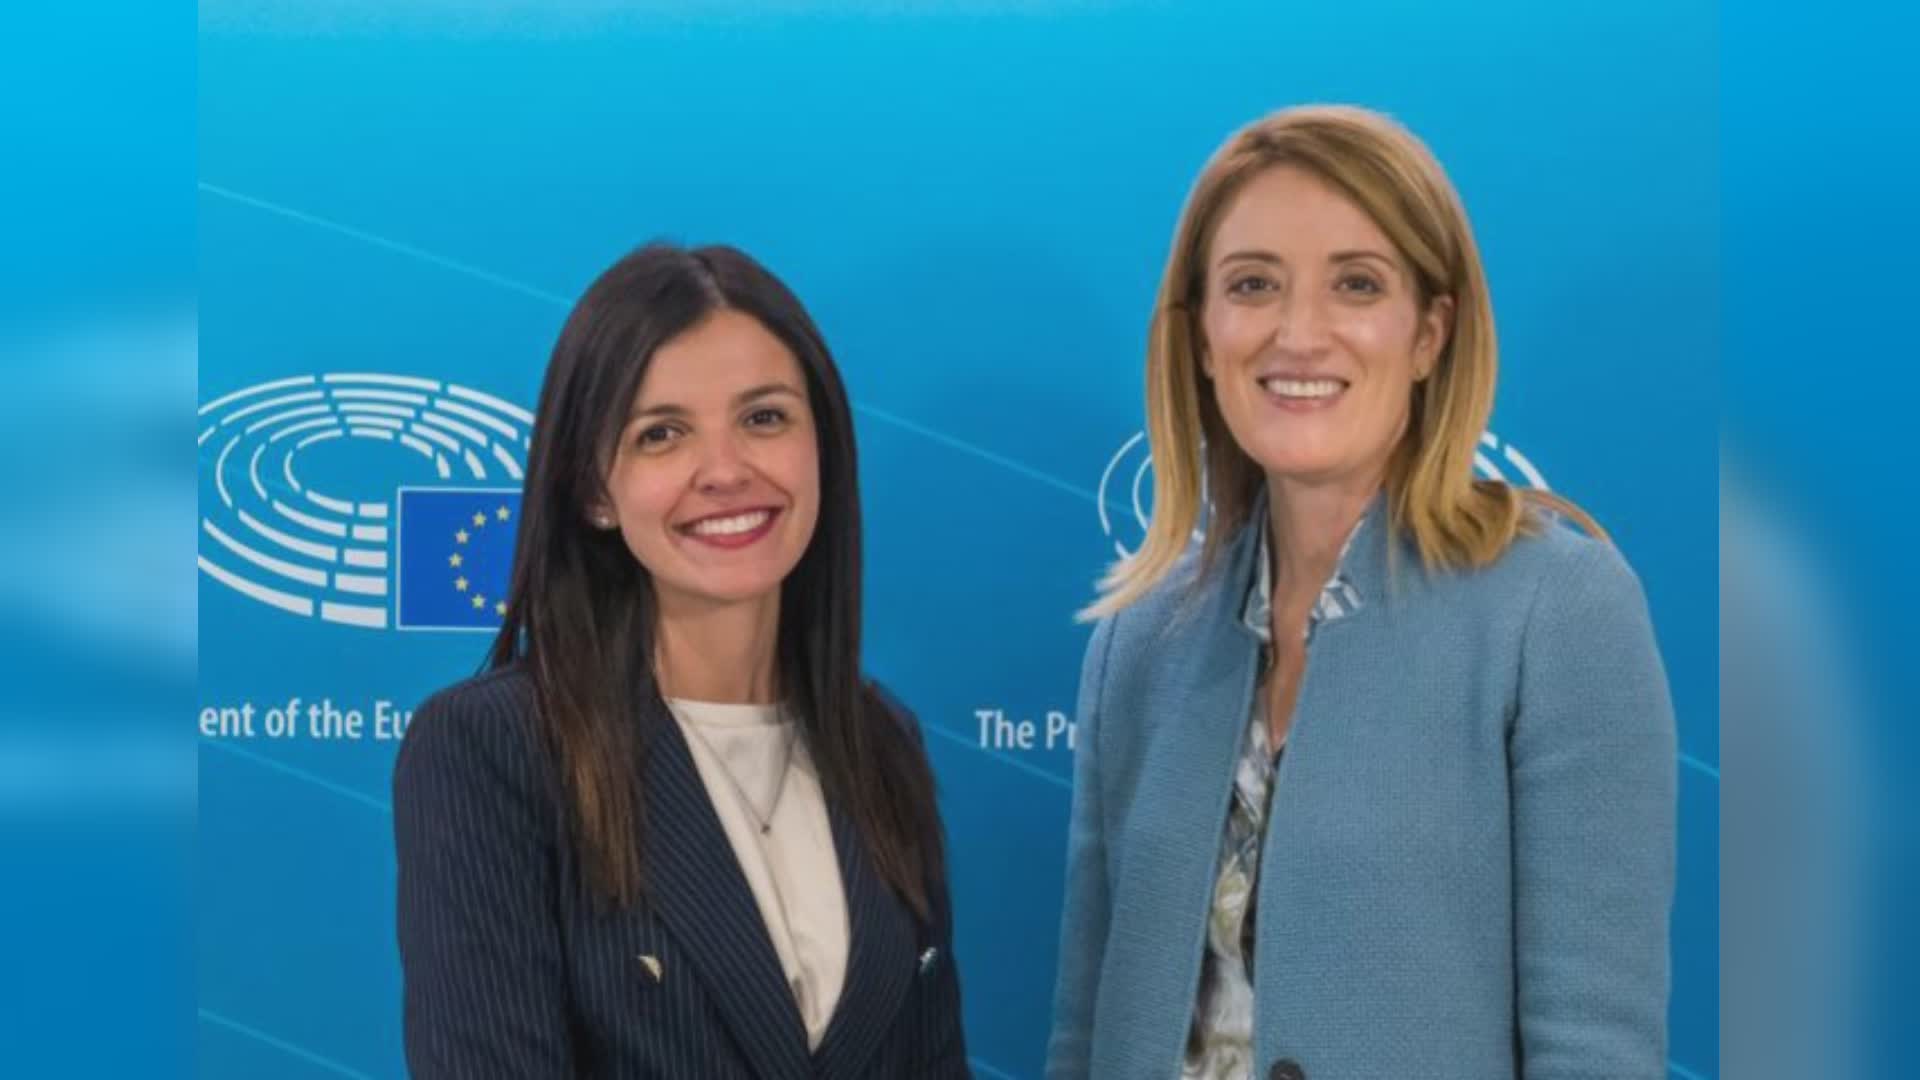 L’europarlamentare Peppucci incontra la presidente Metzola